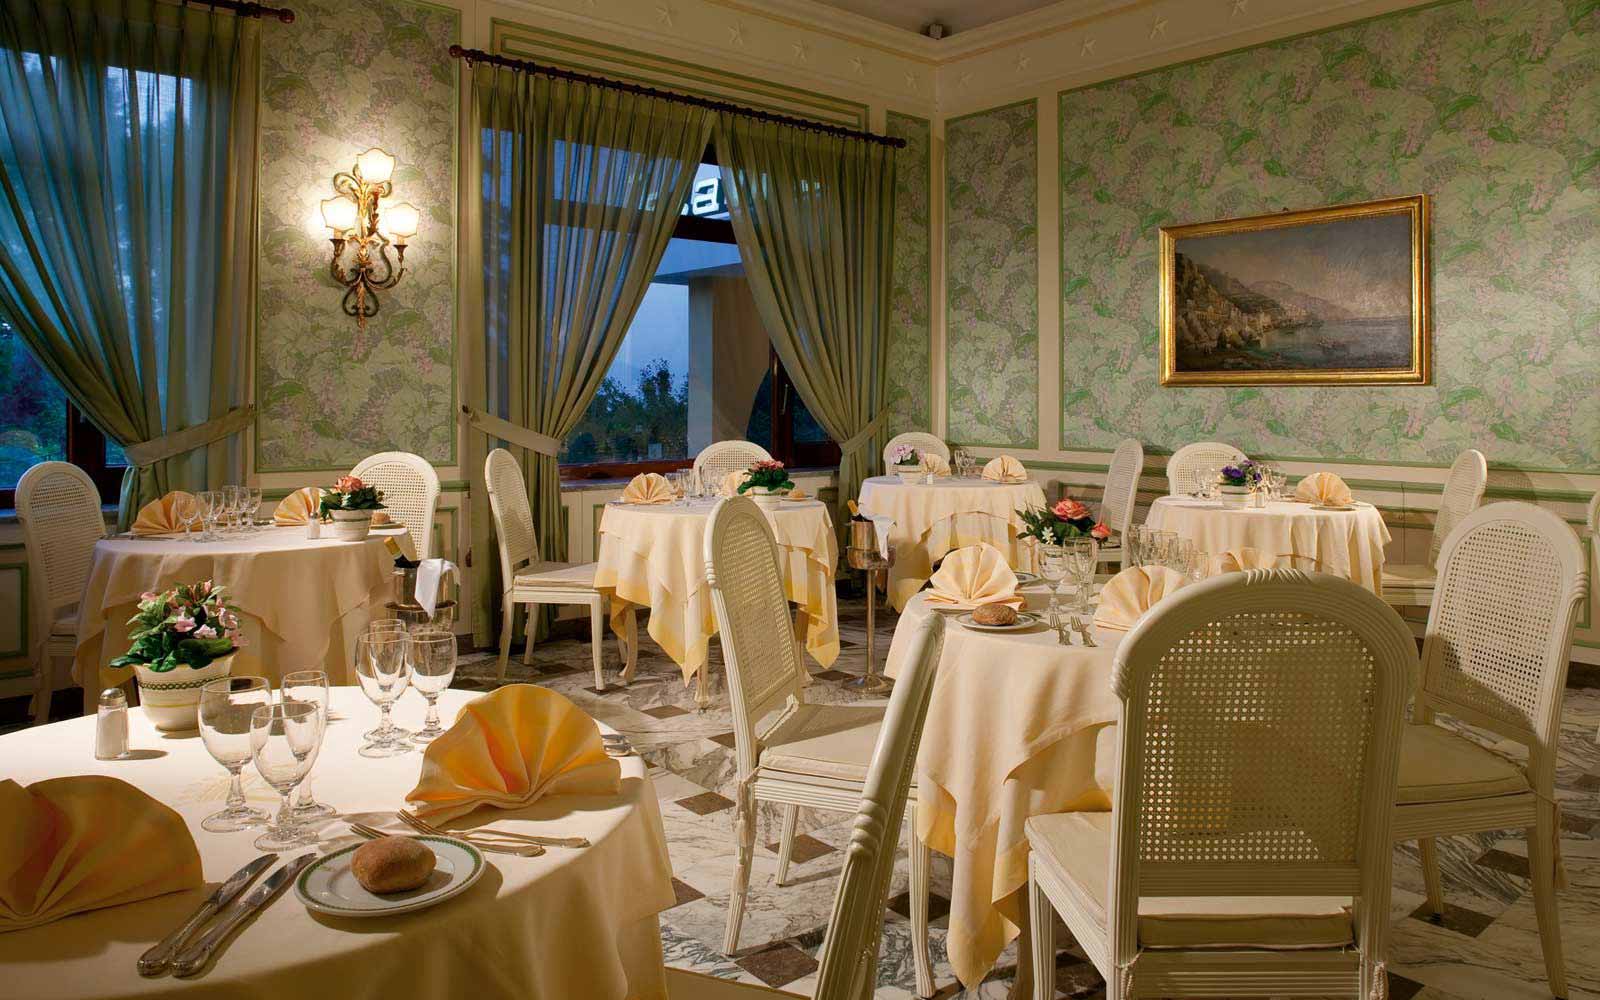 L'Altea restaurant at Grand Hotel de la Ville